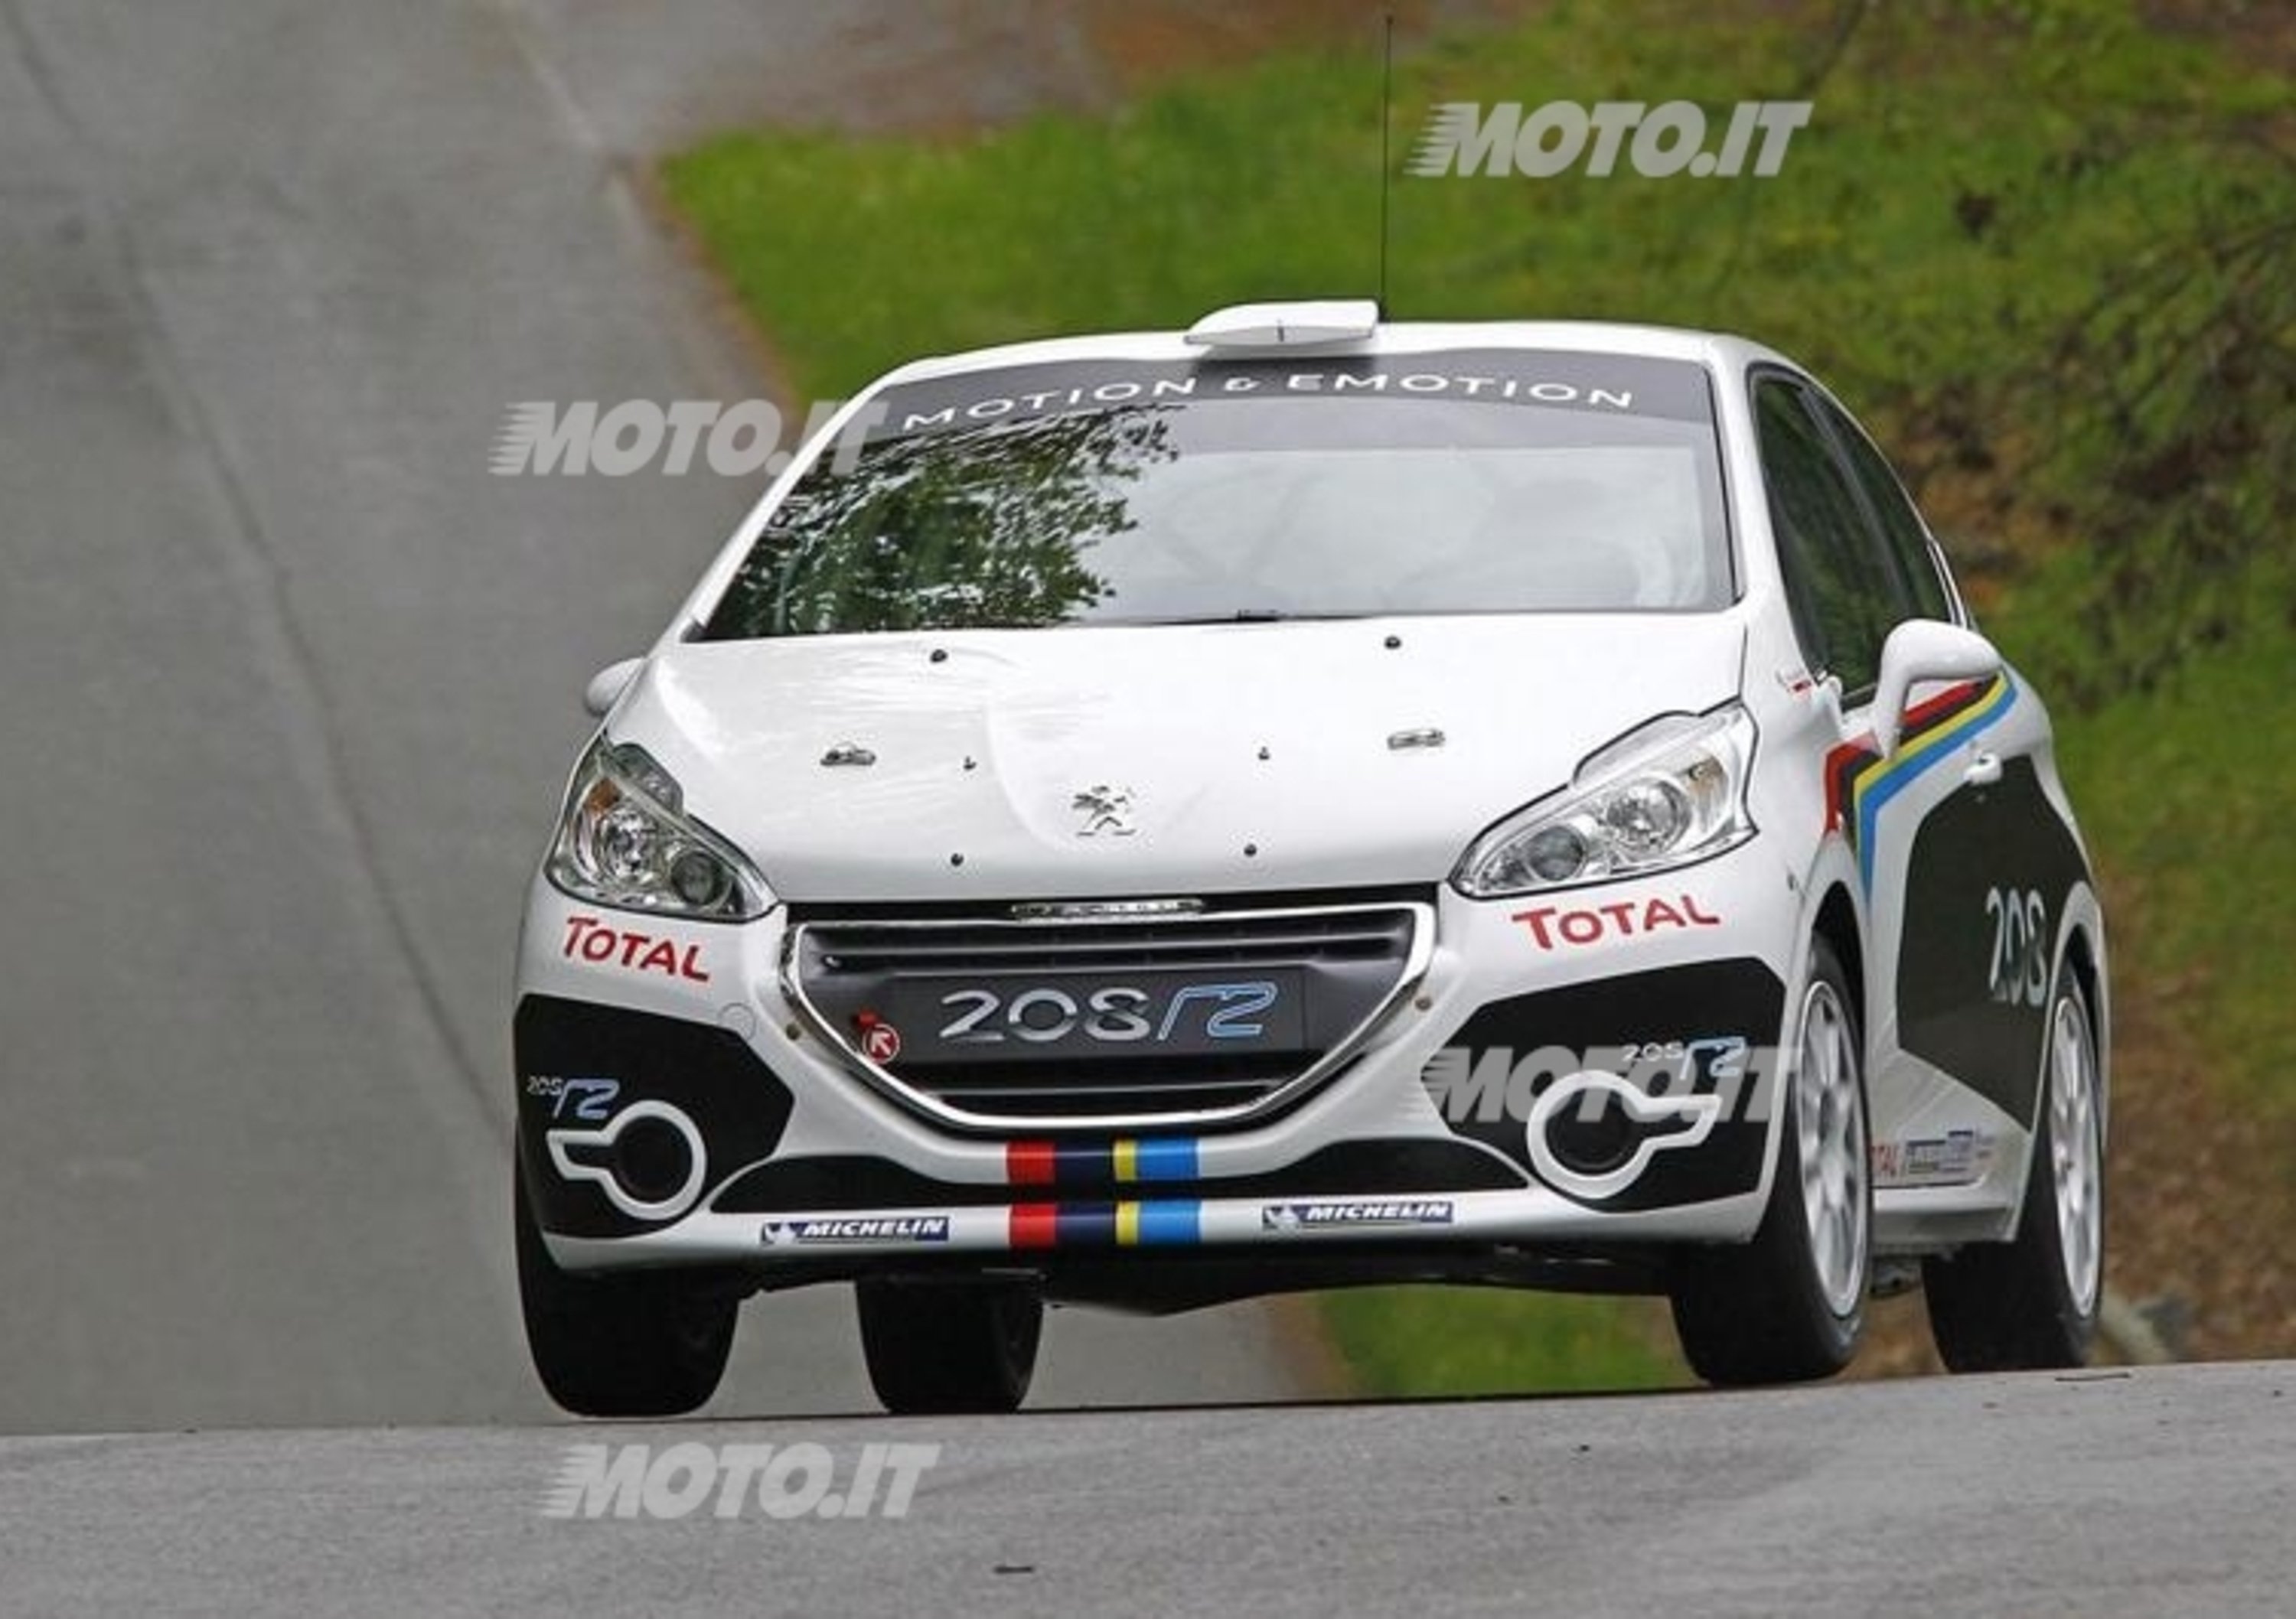 Peugeot Competition 2013: aperte le iscrizioni